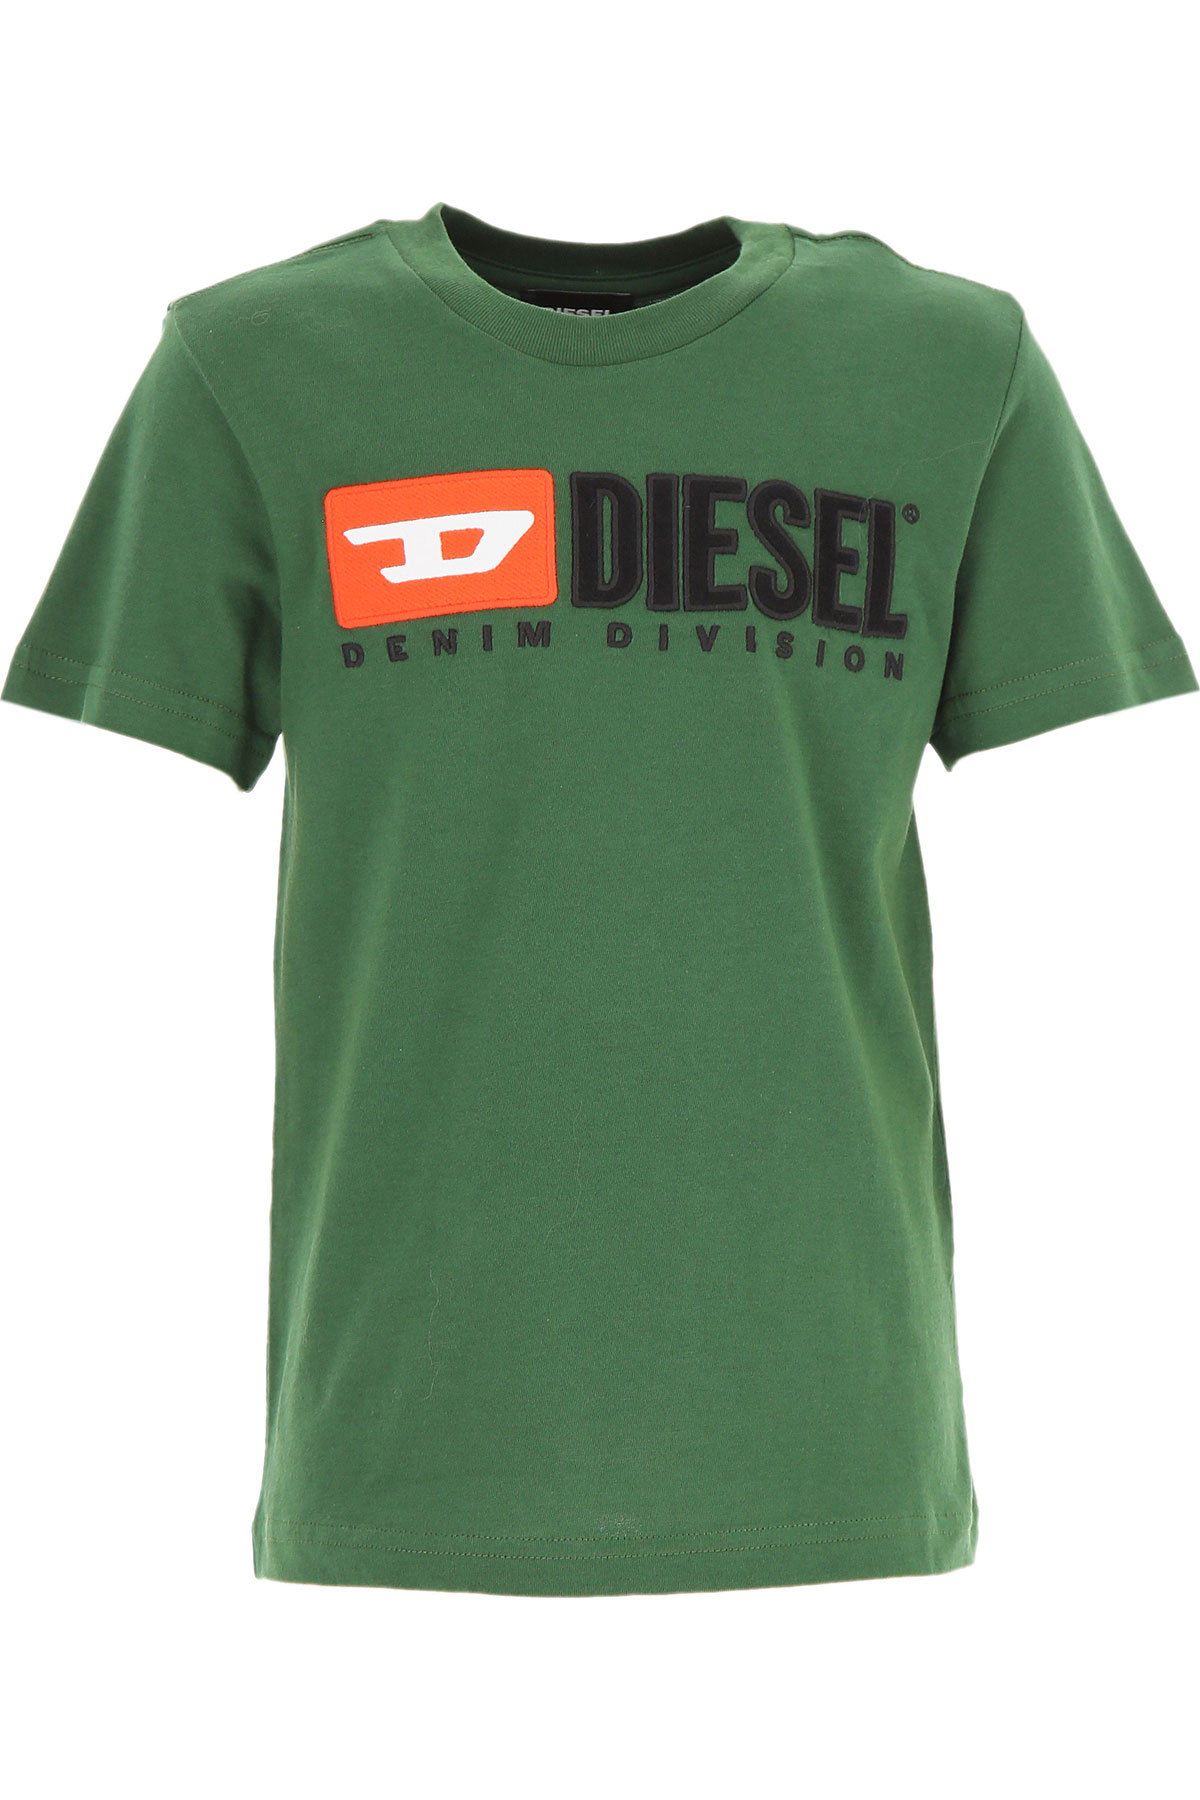 Diesel Kinder T-Shirt für Jungen Günstig im Sale, Grün, Baumwolle, 2017, 10Y 12Y 6Y 8Y